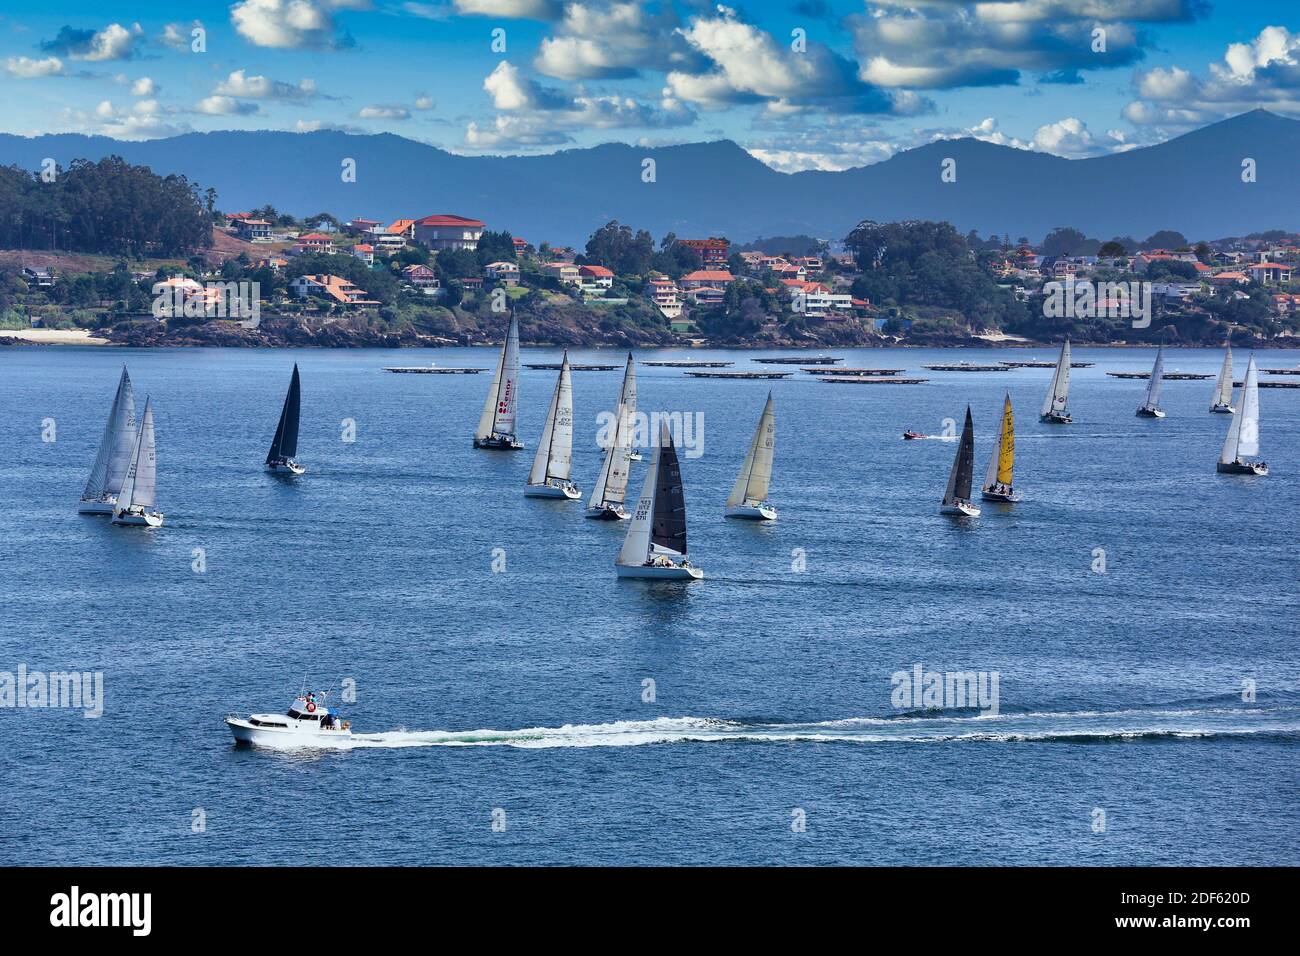 Sailboats in the Ria de Vigo, View from Baiona, Pontevedra, Galicia, Spain Stock Photo